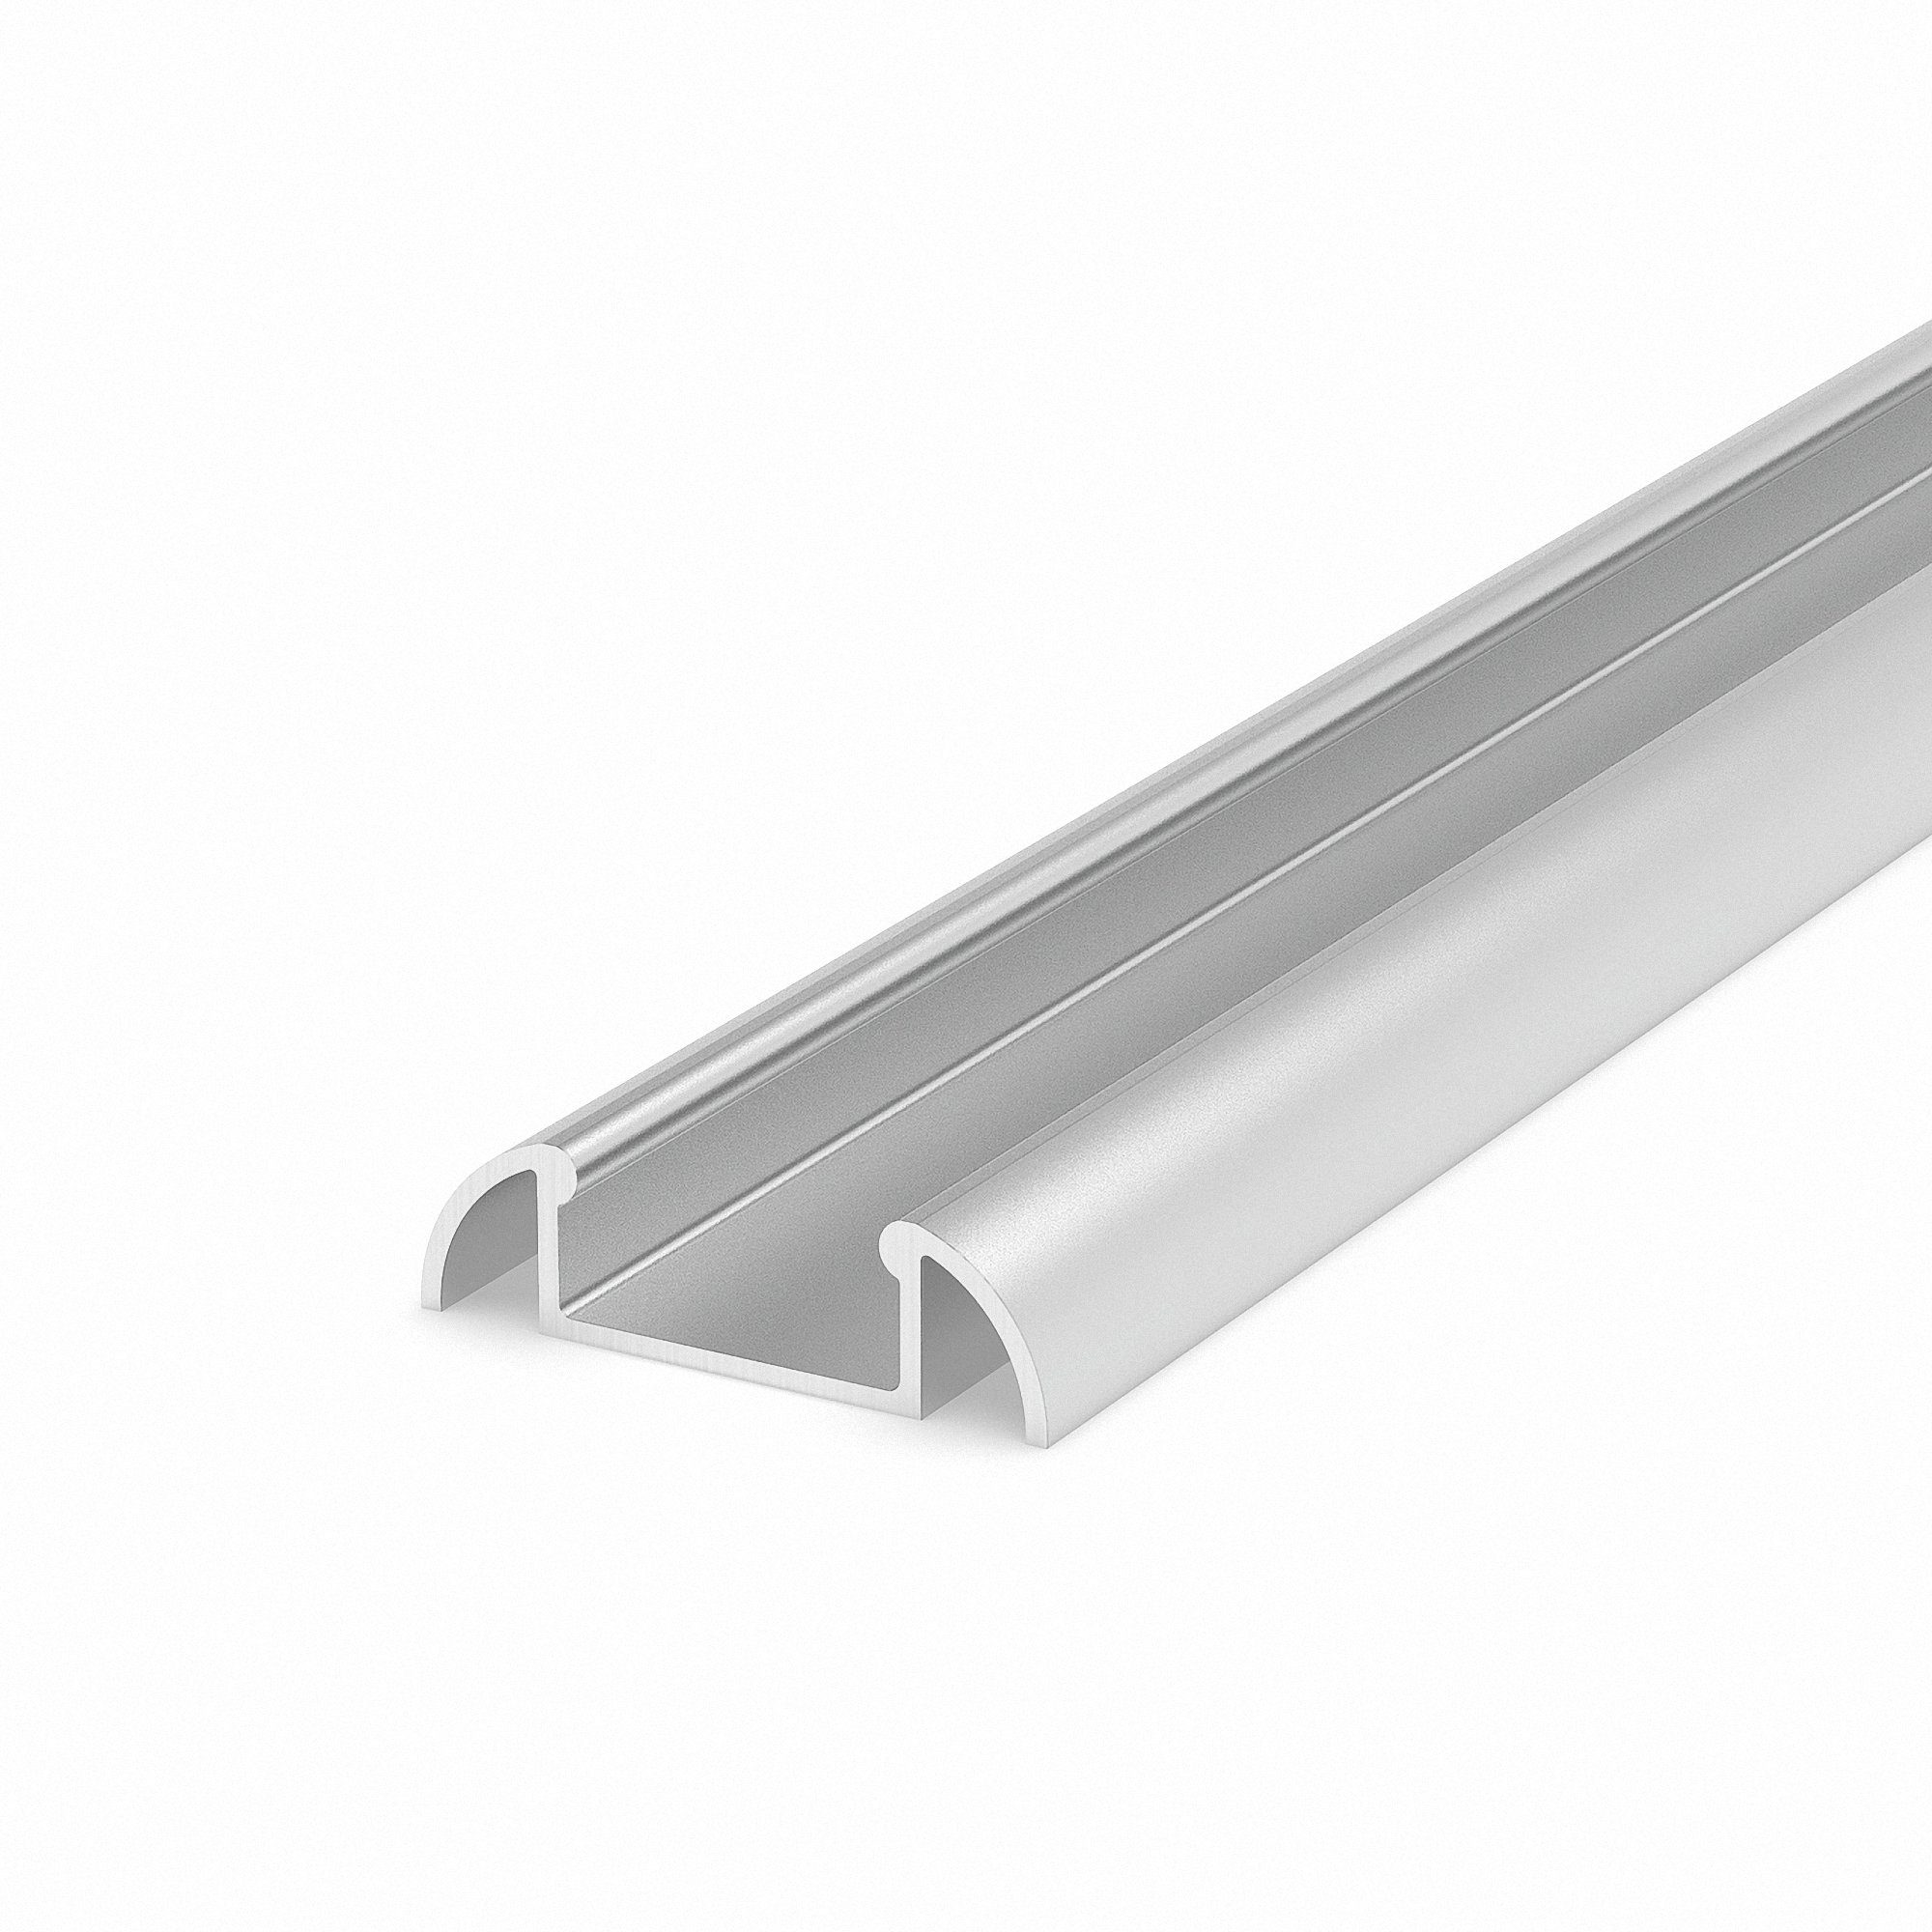 Breite Mextronic LED-Stripe-Profil Streifen bis M2-1 für 100CM 13,4mm in silber ohne Abdeckung